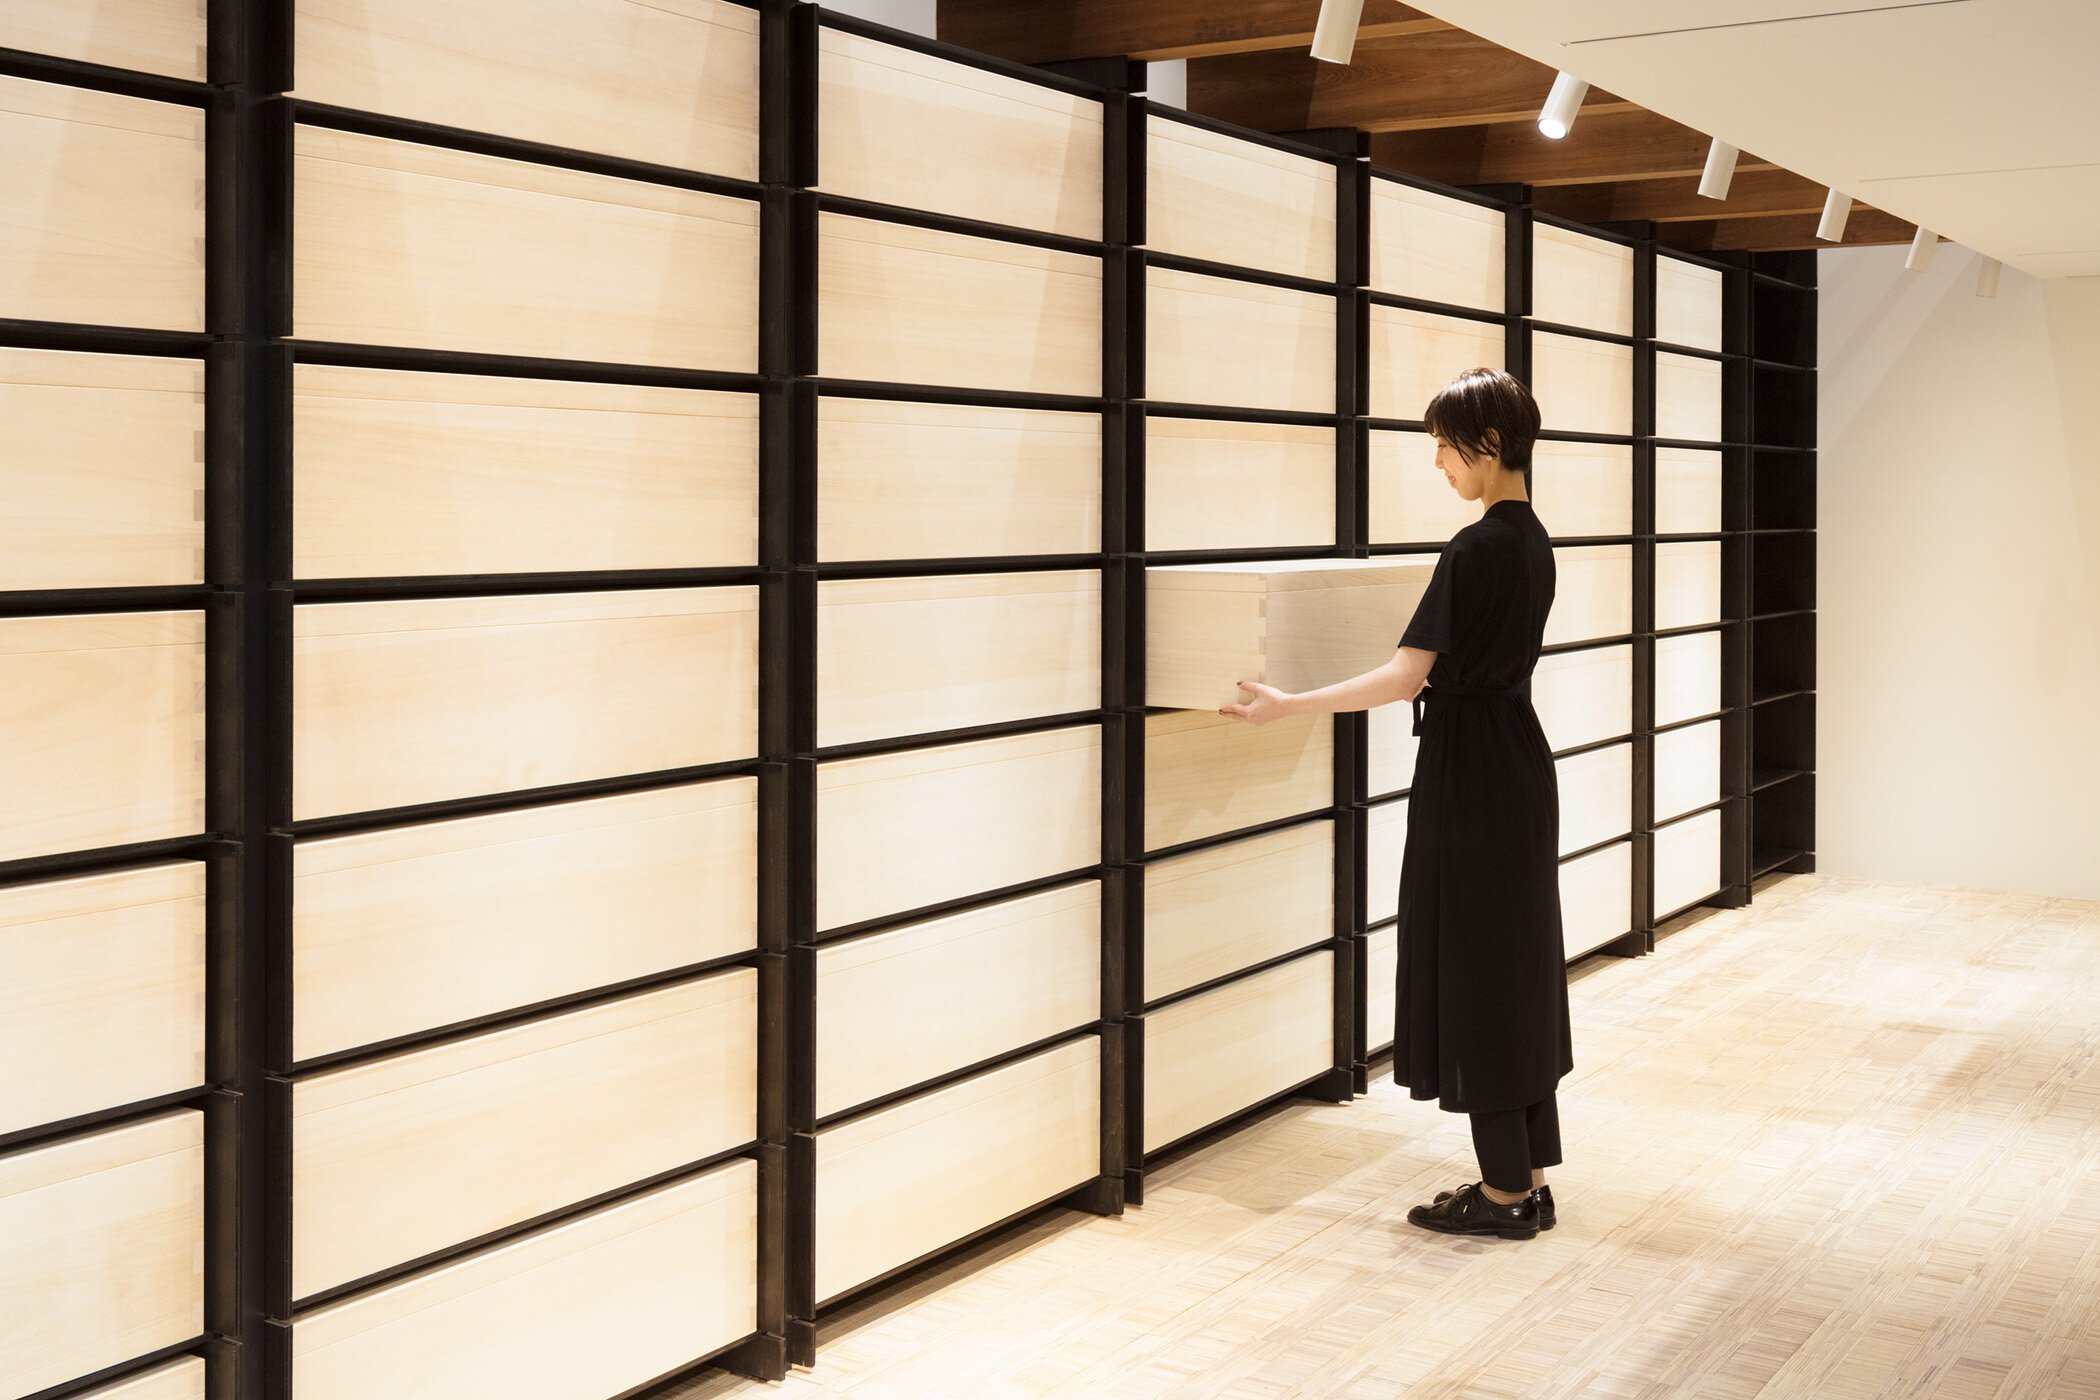  ABOUTの佛願忠洋がインテリアデザインを手掛けた、中川政七商店の「時蔵 TOKIGURA」。一つの桐箱に1年分の成果を納めるというコンセプト。 